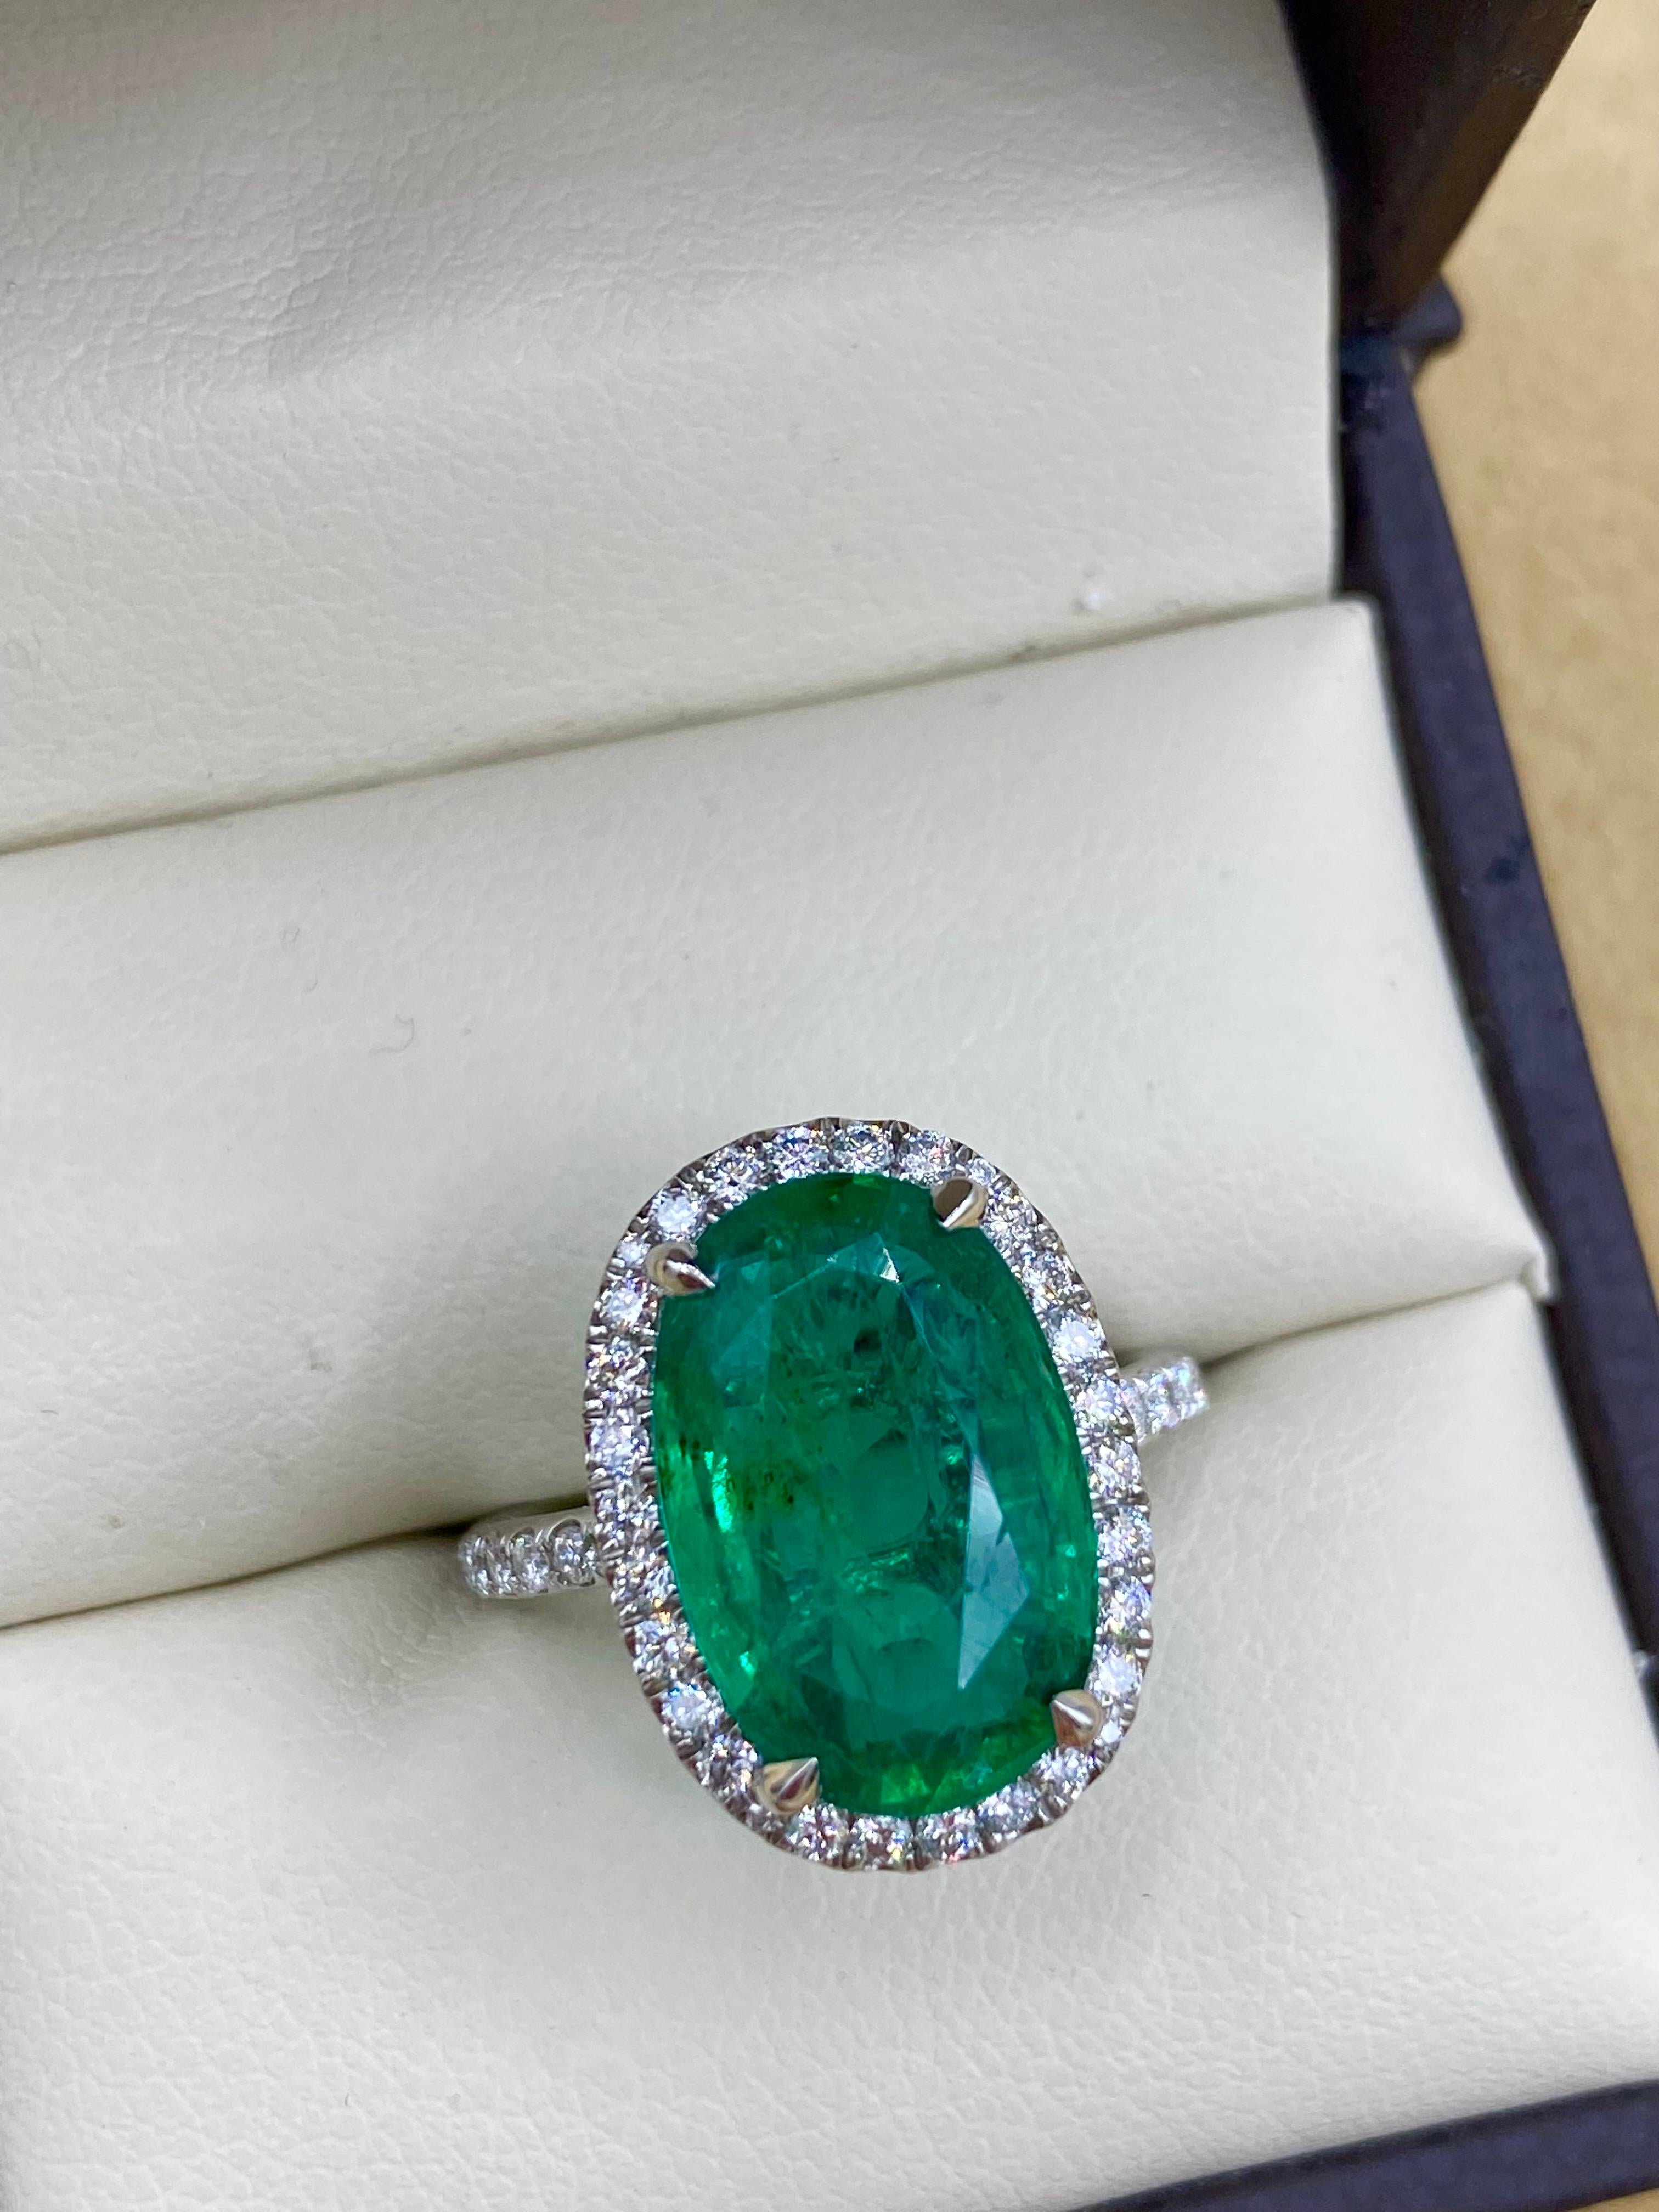 Aus dem Tresor von Emilio Jewelry in der berühmten New Yorker Fifth Avenue,
Ein ganz besonderer und einzigartiger sambischer Smaragd von 5,62 Karat bildet den Mittelpunkt dieses Rings. Was diesen Ring wirklich besonders macht, ist die einzigartige